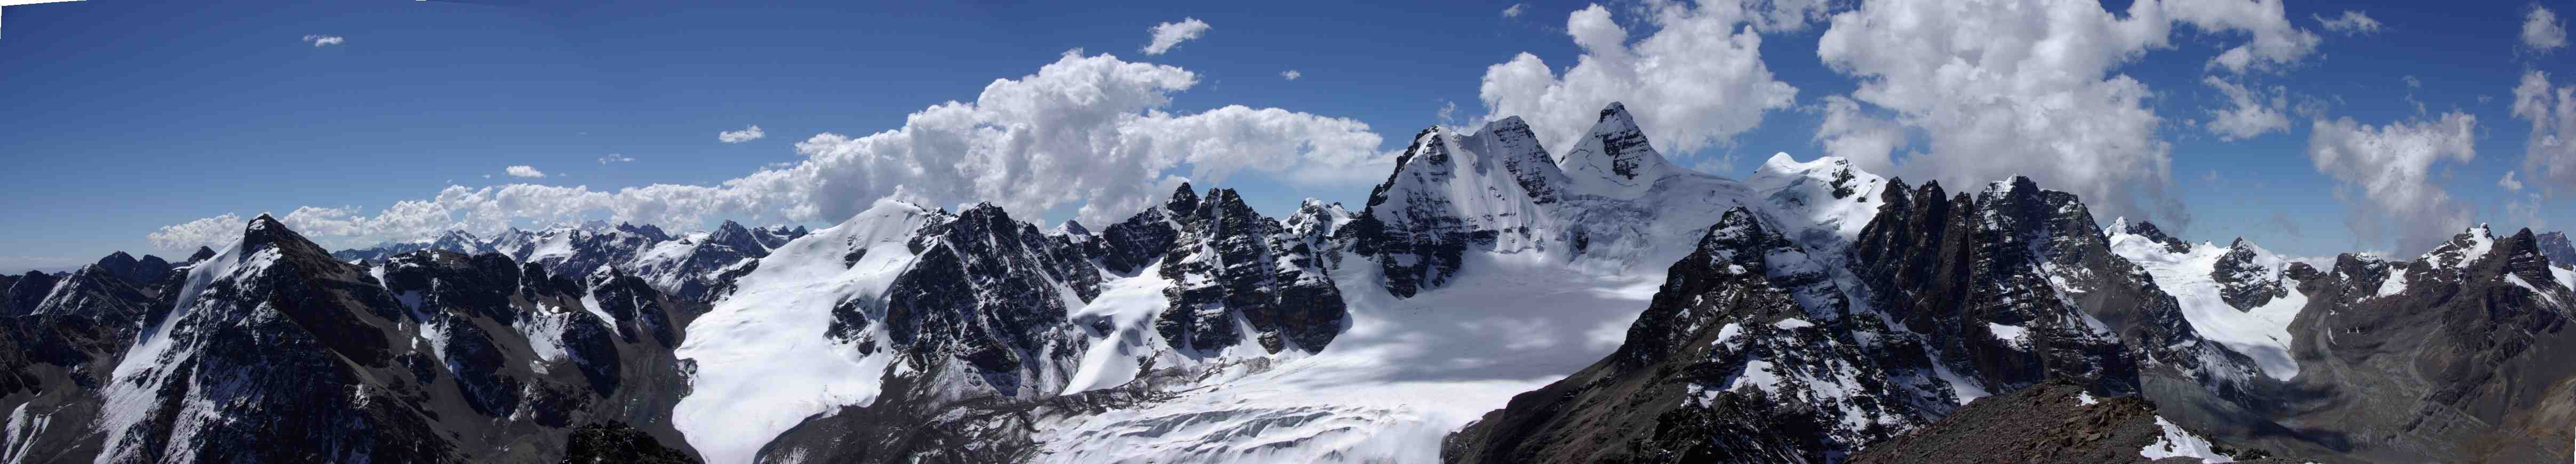 Panorama depuis le pic des Autrichiens (5342 m), le 11 août 2008 (pour le détail des sommets au loin sur la partie gauche, voir le panoramique précédent ; ensuite on trouve bien sûr le Condoriri, puis l’Alpamayo).